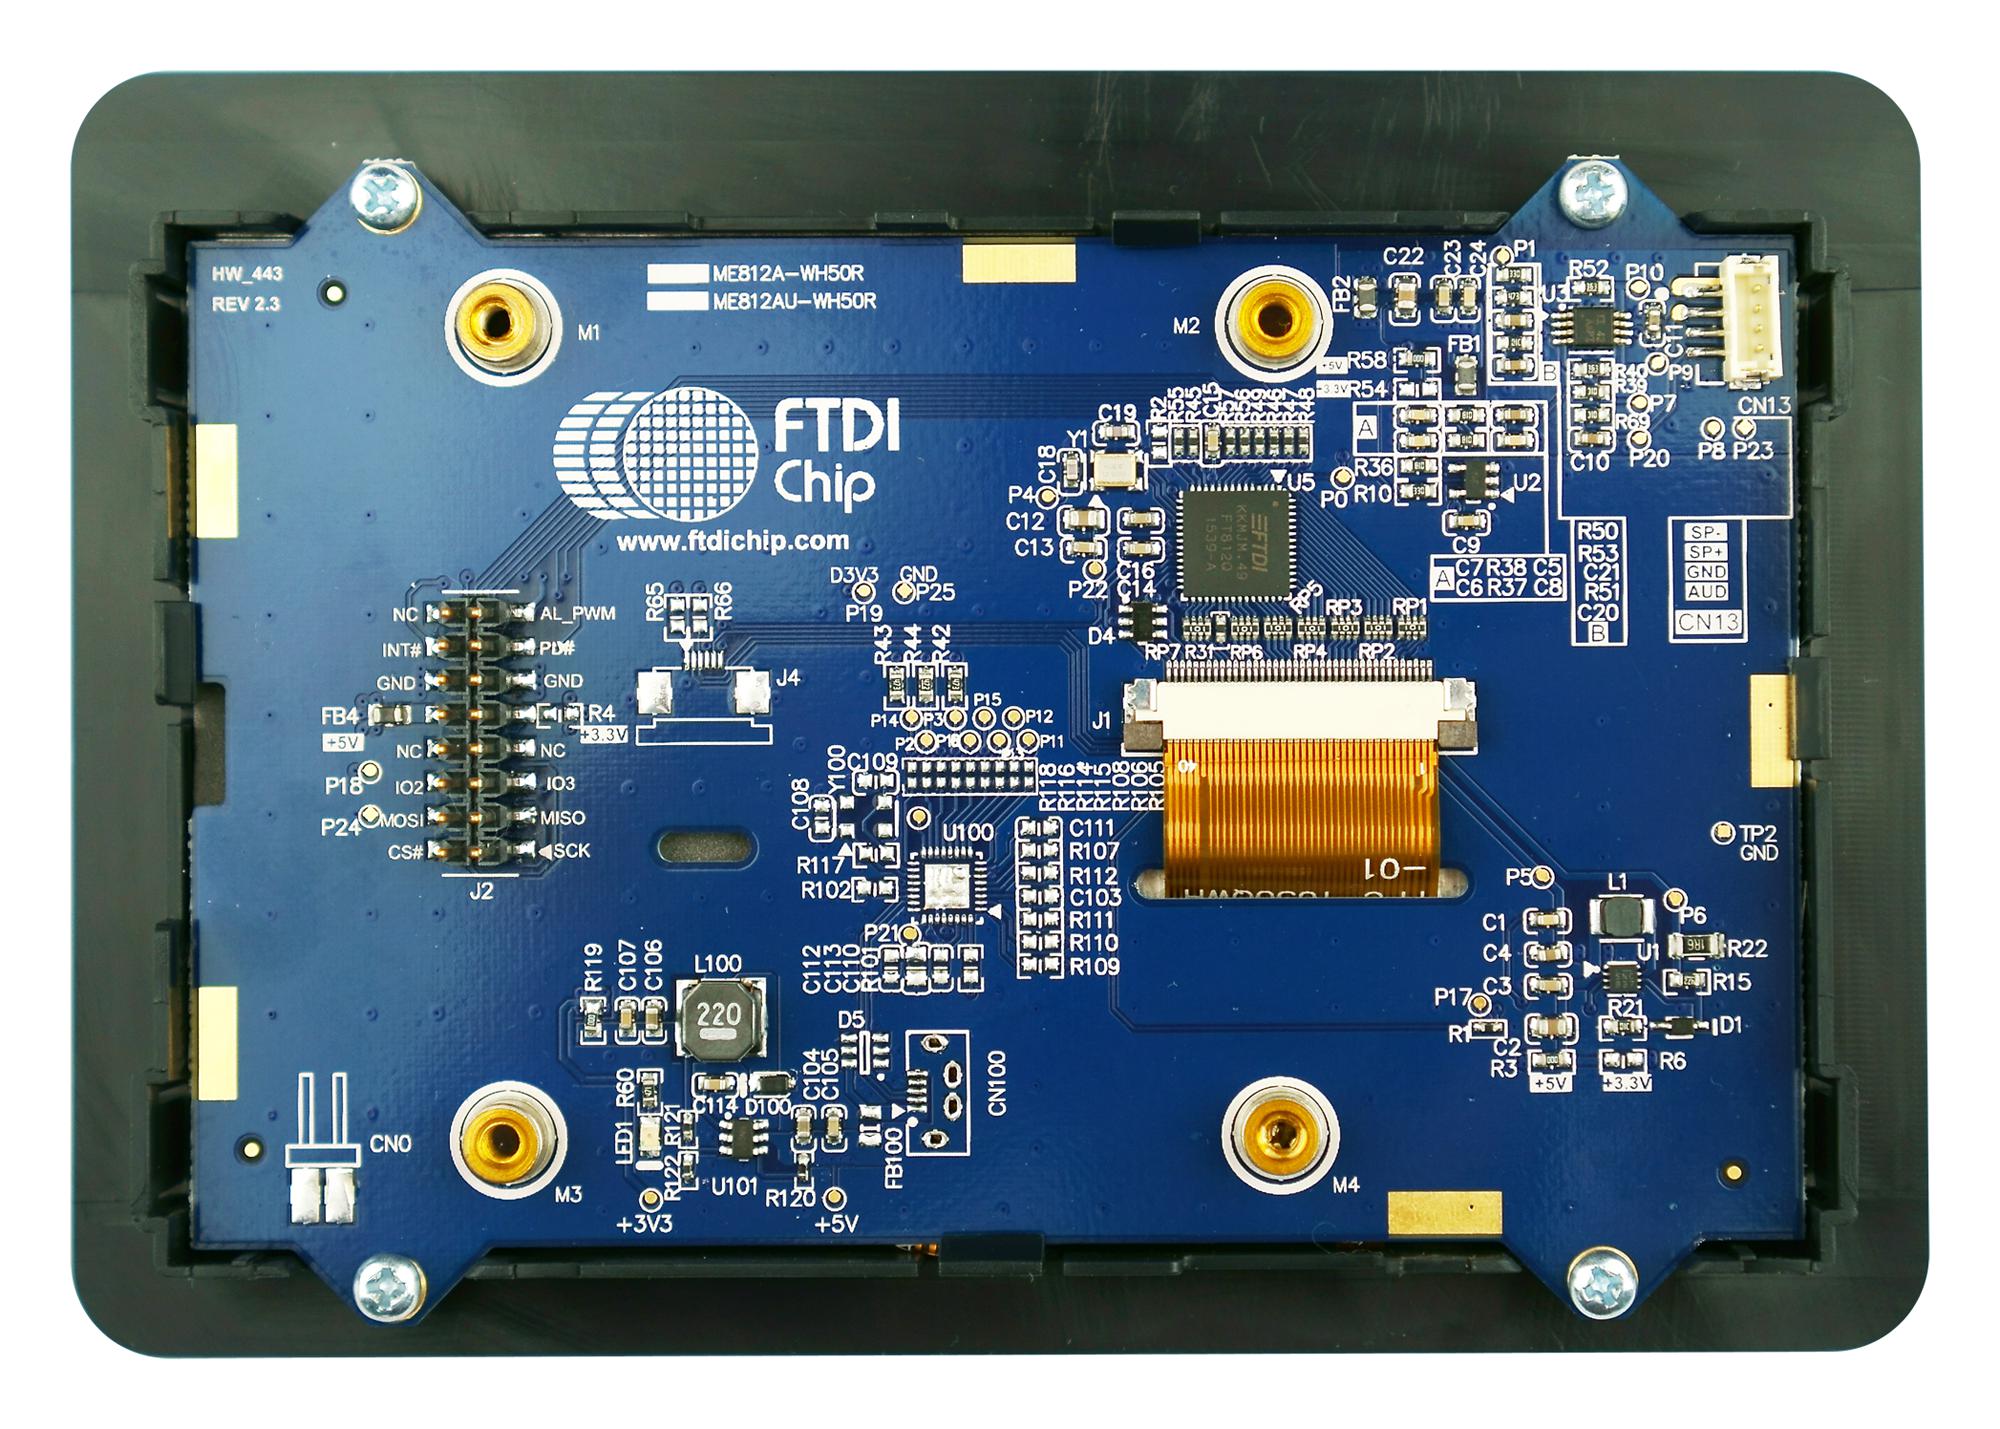 ME812A-WH50R DEV MODULE, 800X480 TFT LCD DISPLAY BRIDGETEK